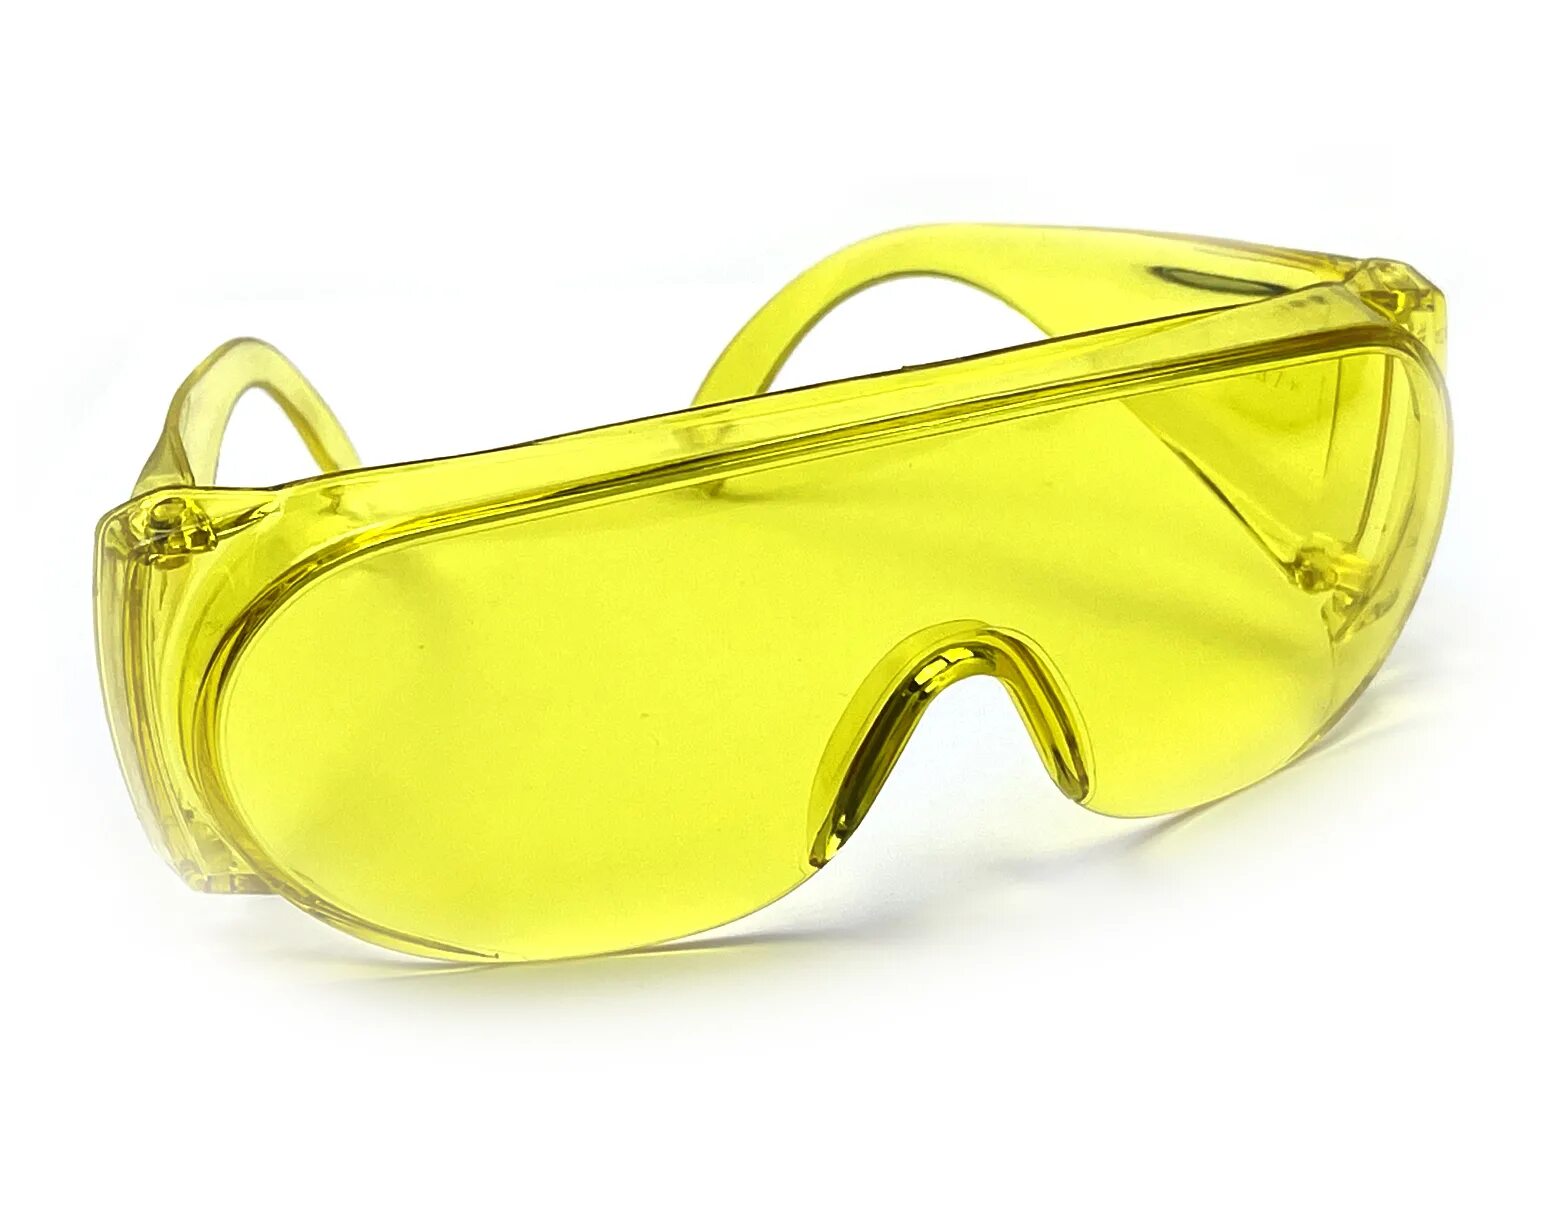 Очки защитные ЗУБР Протон 110482, открытые, желтый/синий. Очки защитные желтые Fit 12220. Очки защитные 034 (стекло у, в1-в2). Очки защитные Truper желтые len-la 15295. Очки защитные открытые поликарбонатные